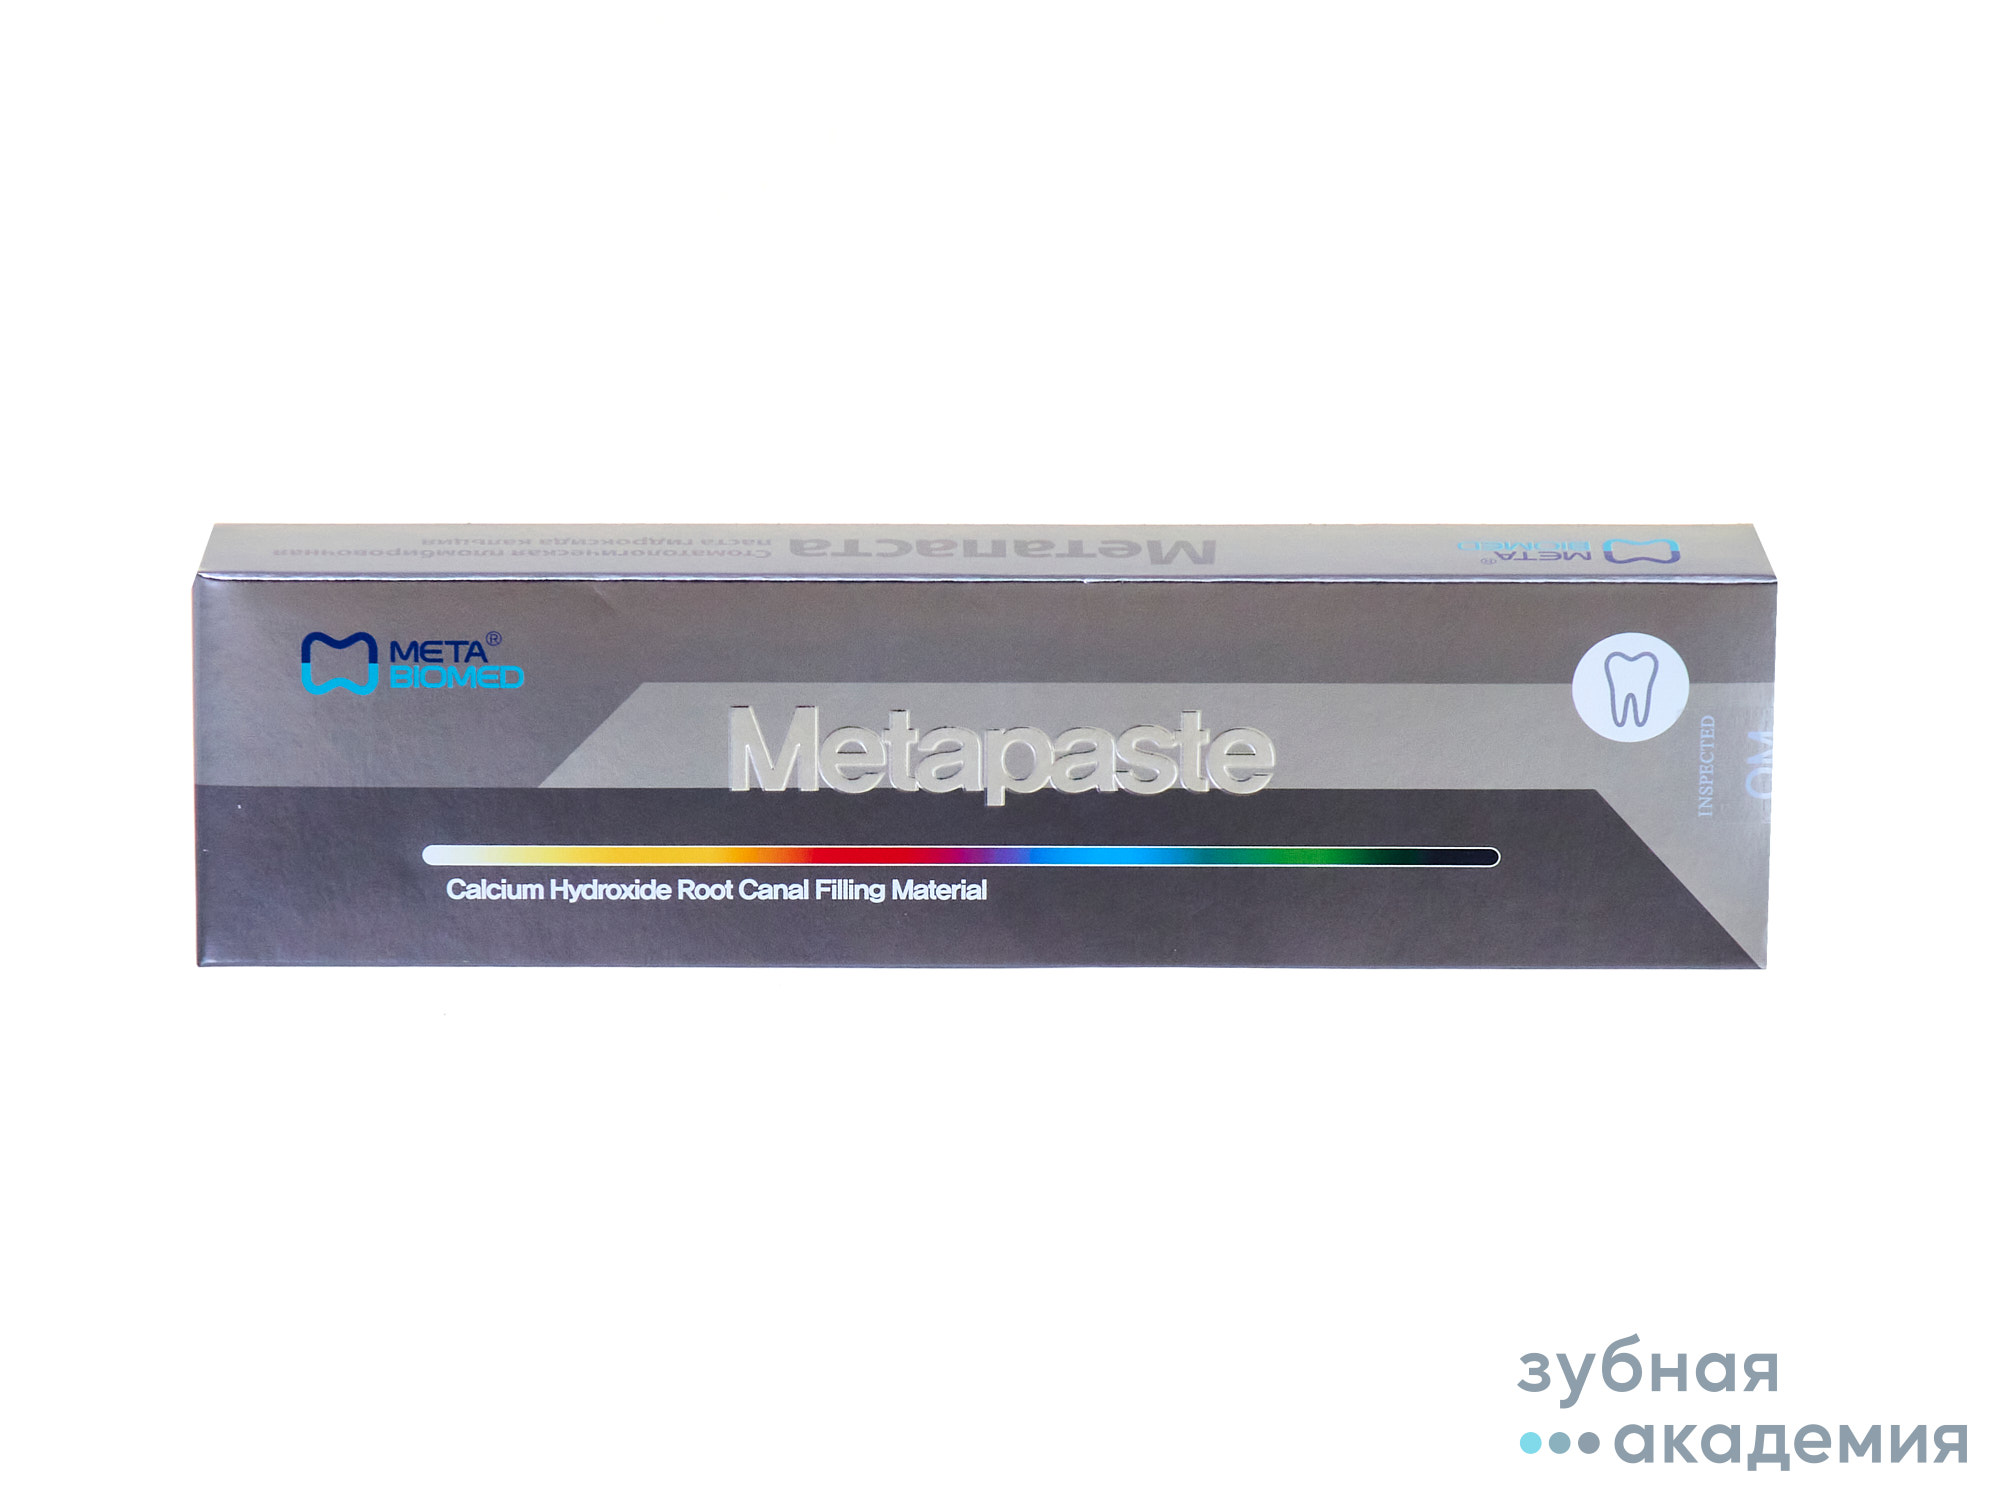 Metapaste Метапаста, 2шпр по 2.2 г., Meta Biomed/ Корея